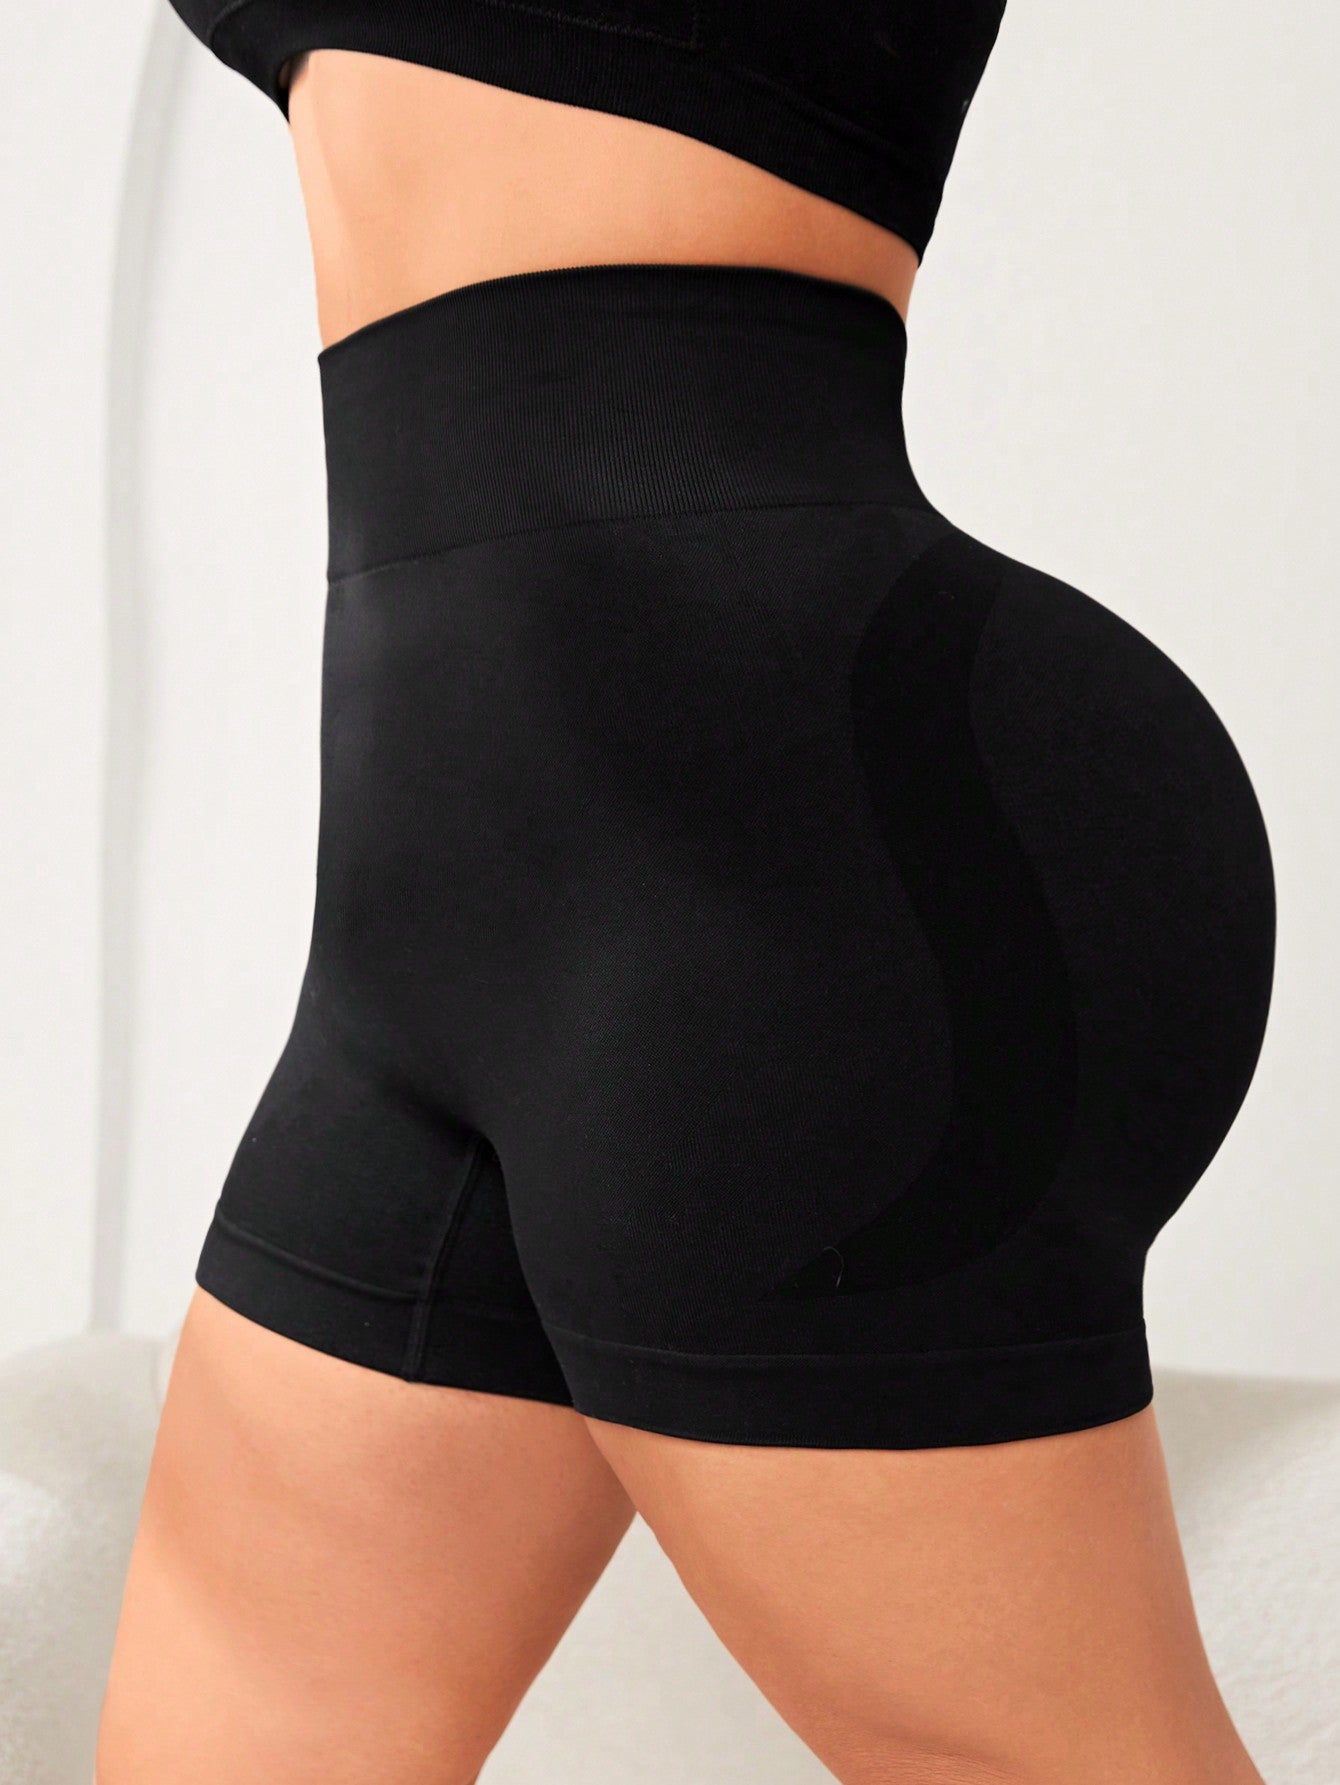 Yoga Plus Size Women's Solid Color Yoga Workout Shorts Black Biker Shorts